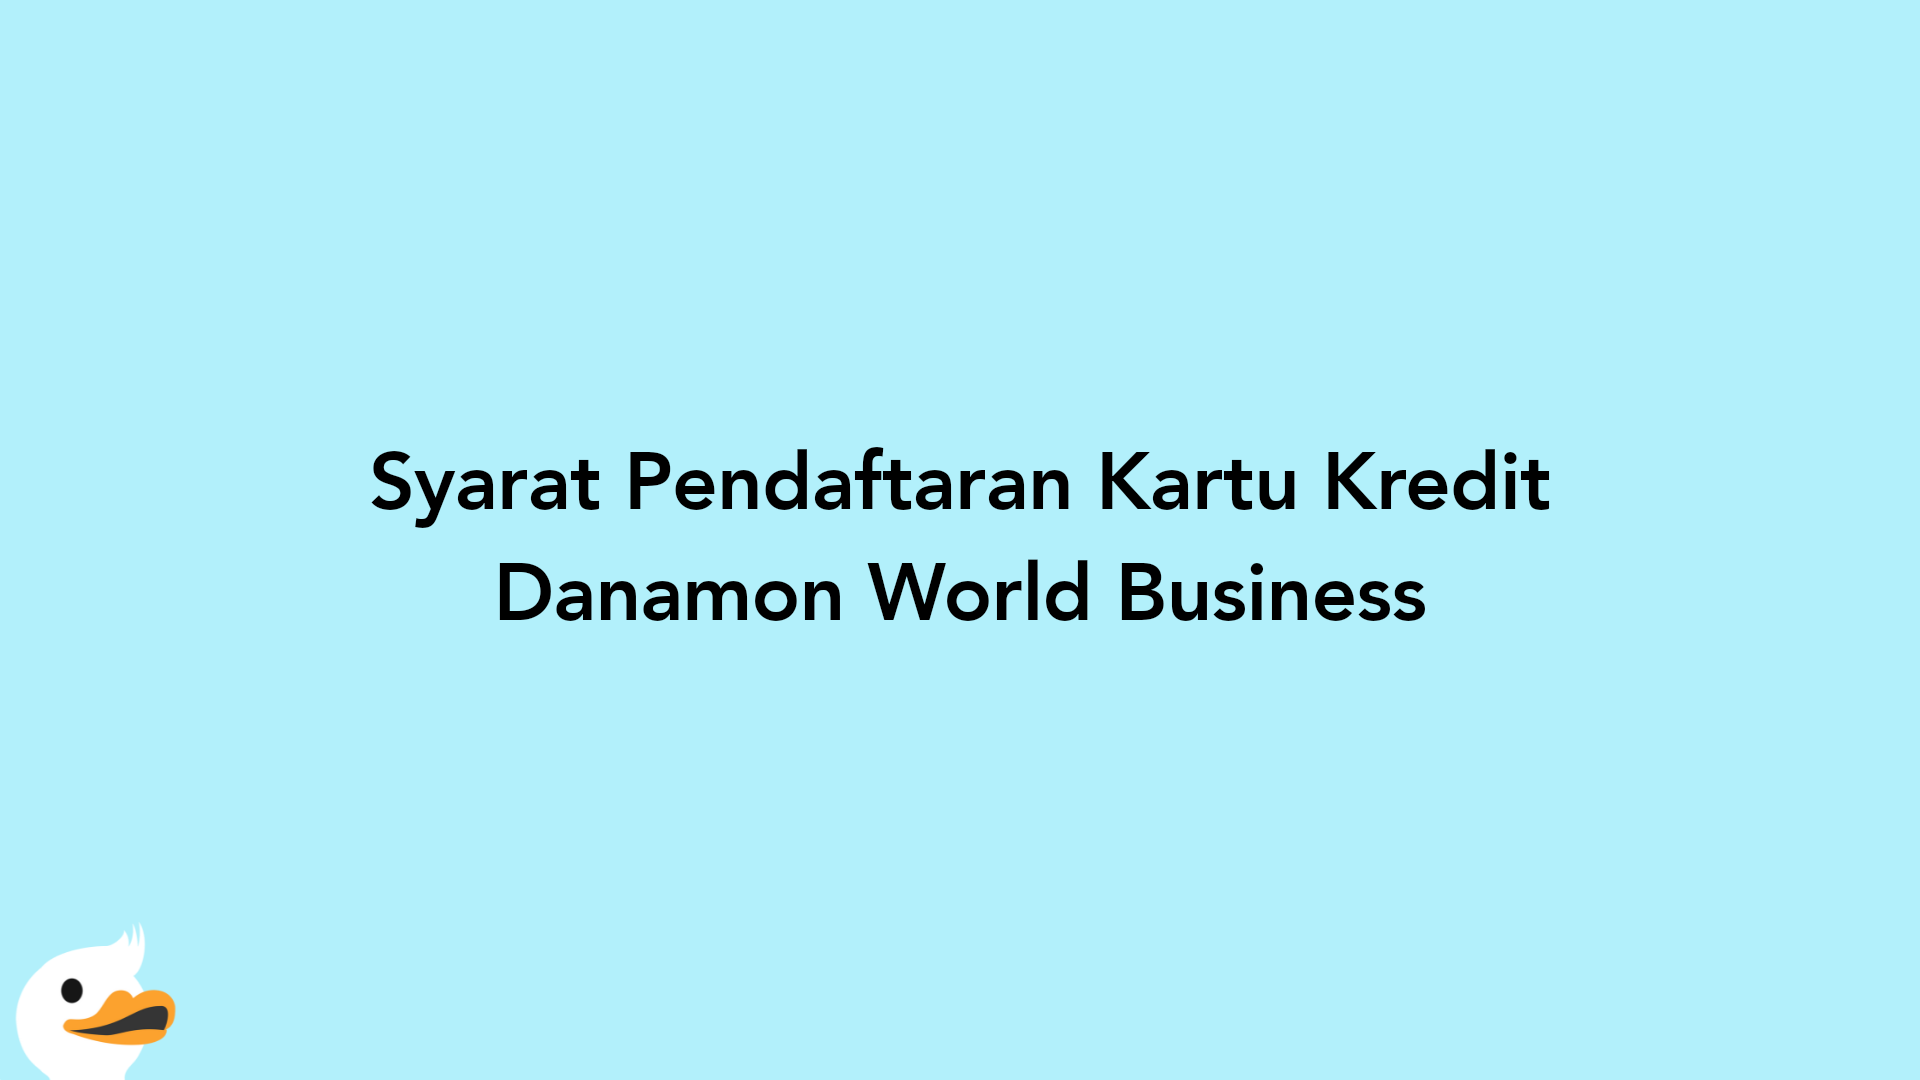 Syarat Pendaftaran Kartu Kredit Danamon World Business